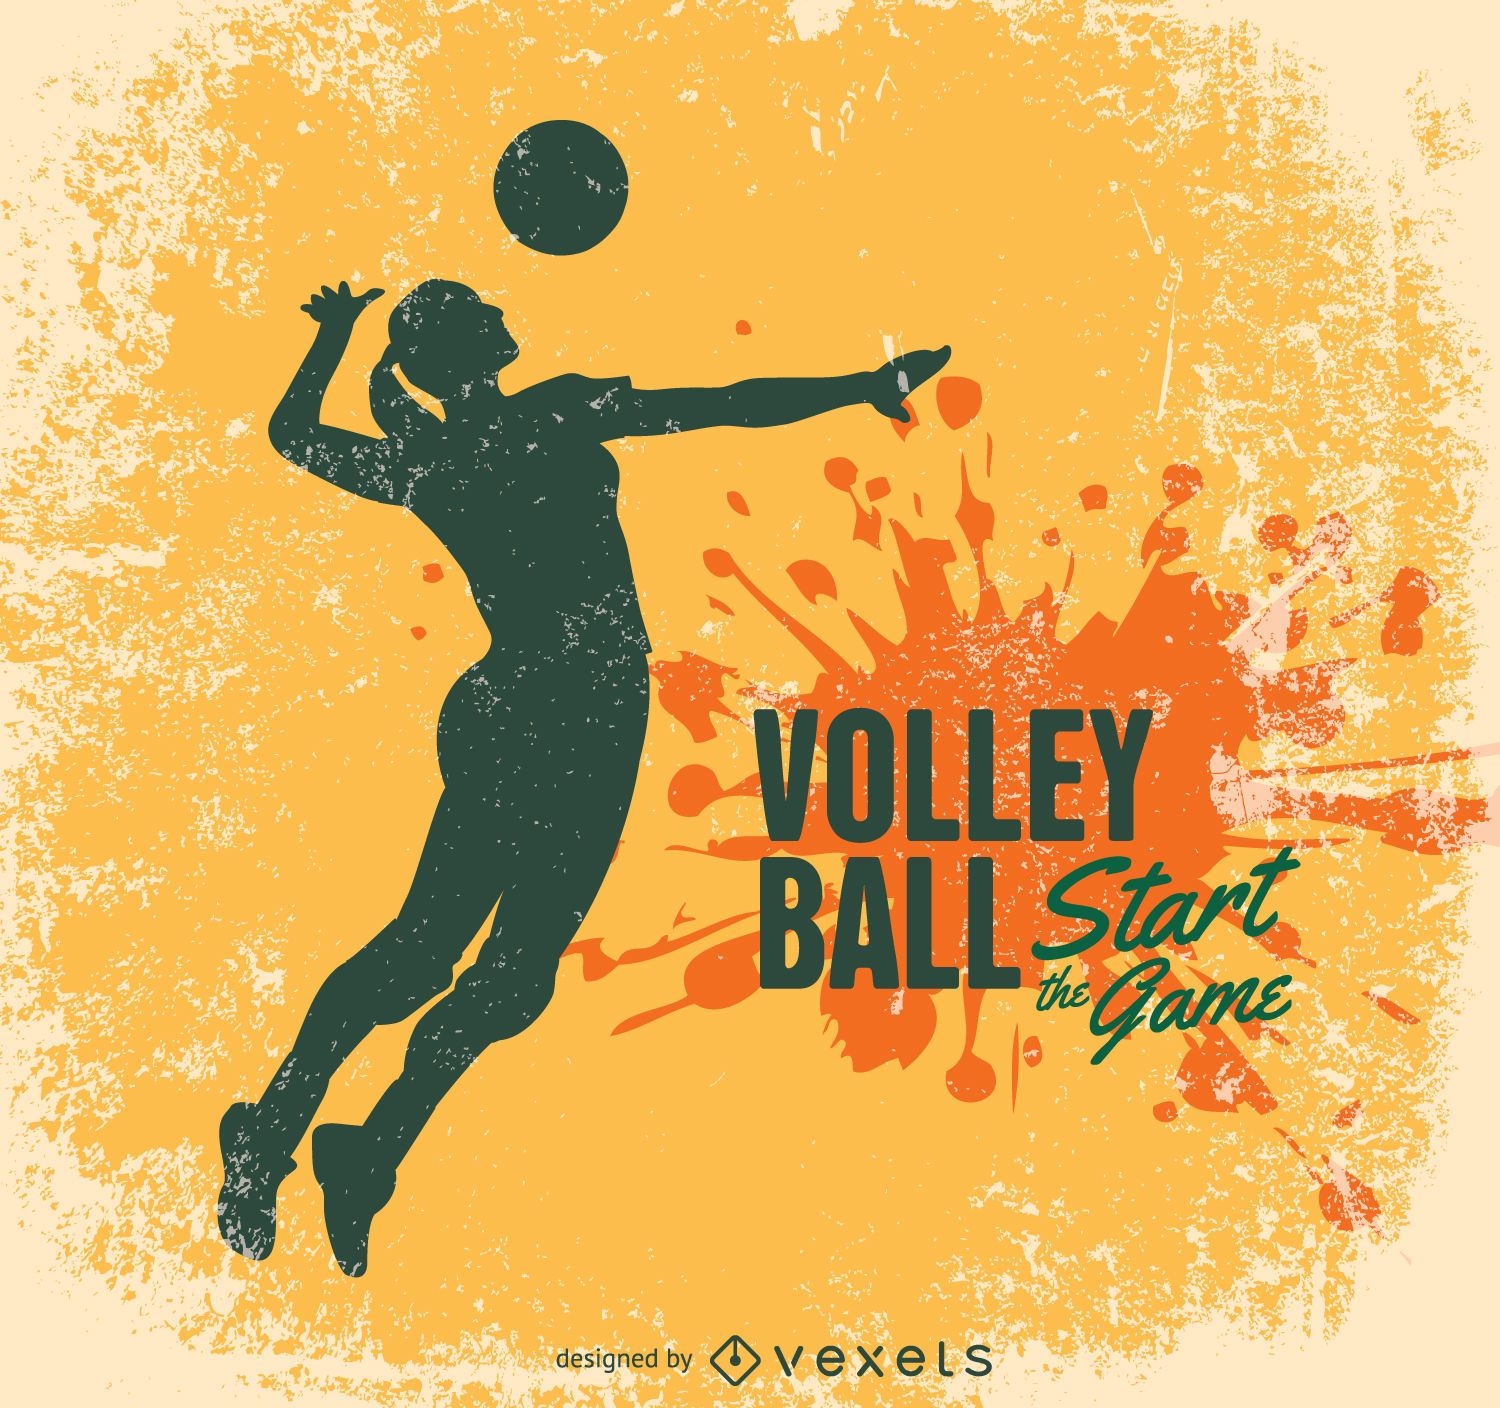 Volleyball grunge design